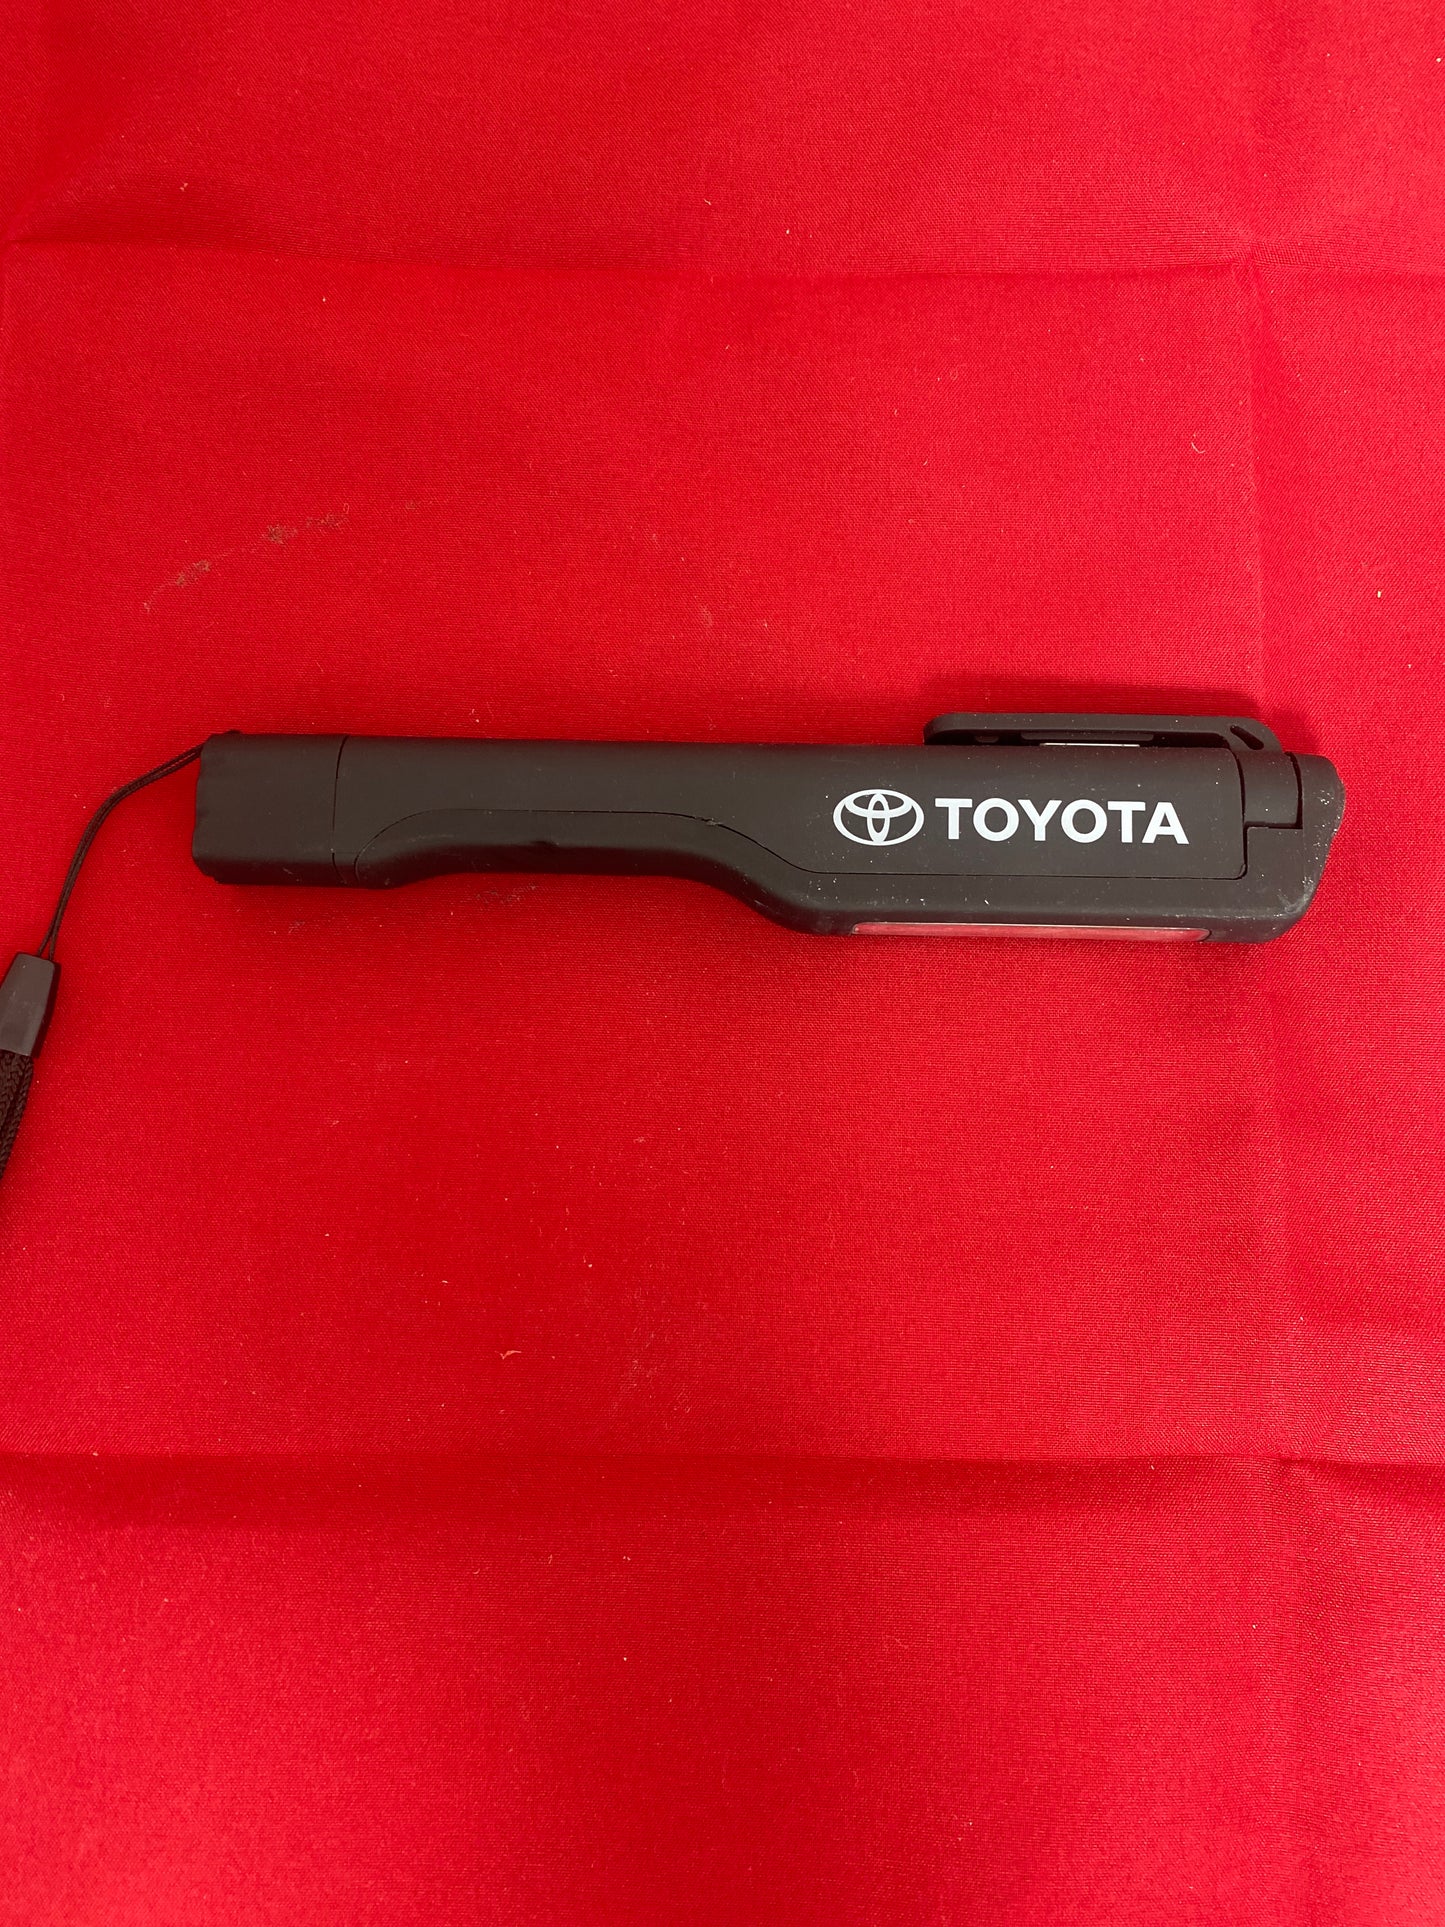 Toyota Toyota Flashlight 11078